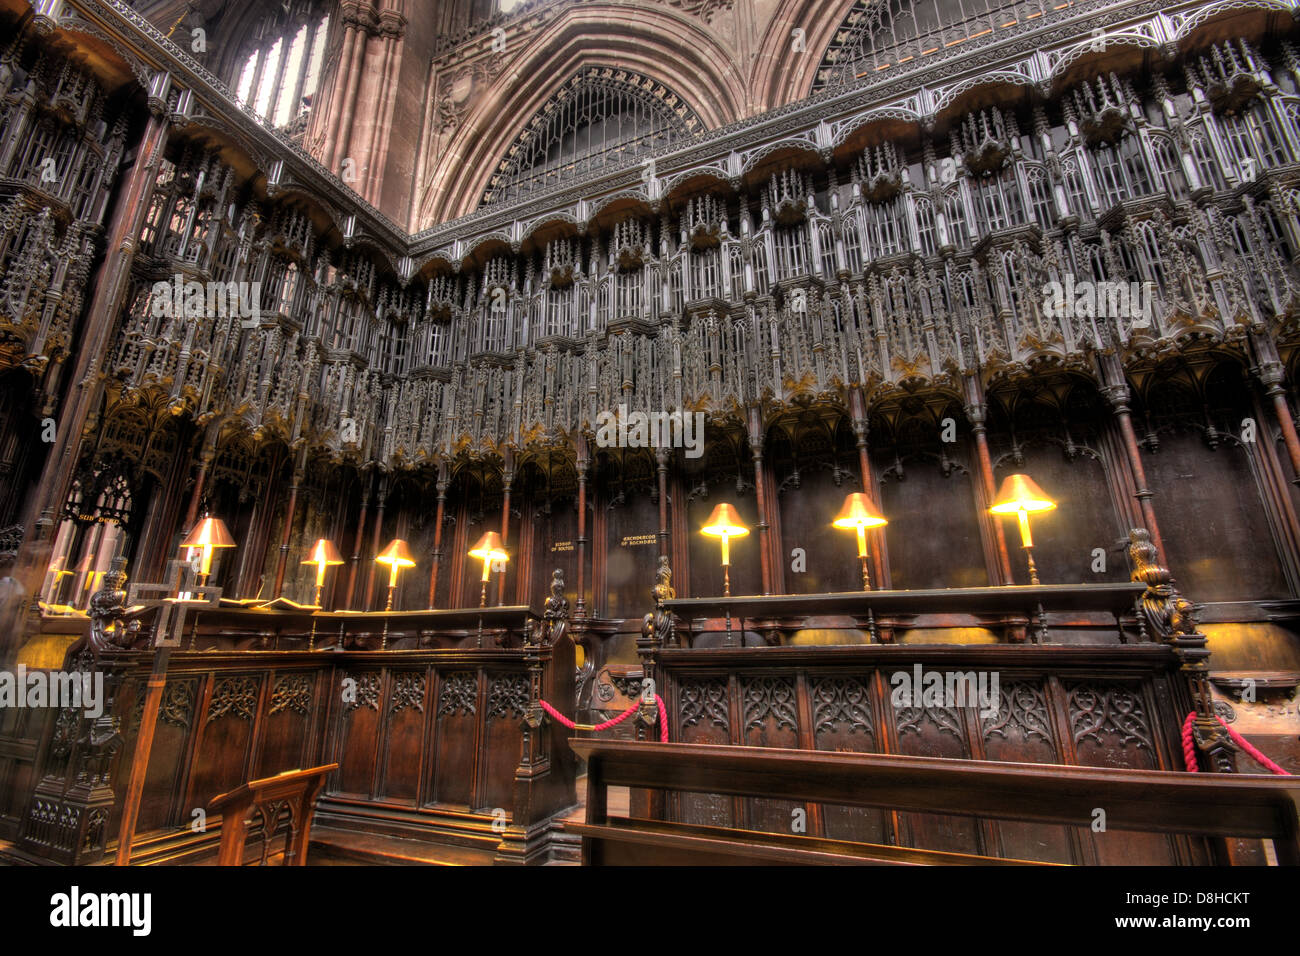 Détail de l'intérieur de la cathédrale de Manchester NE England UK Banque D'Images